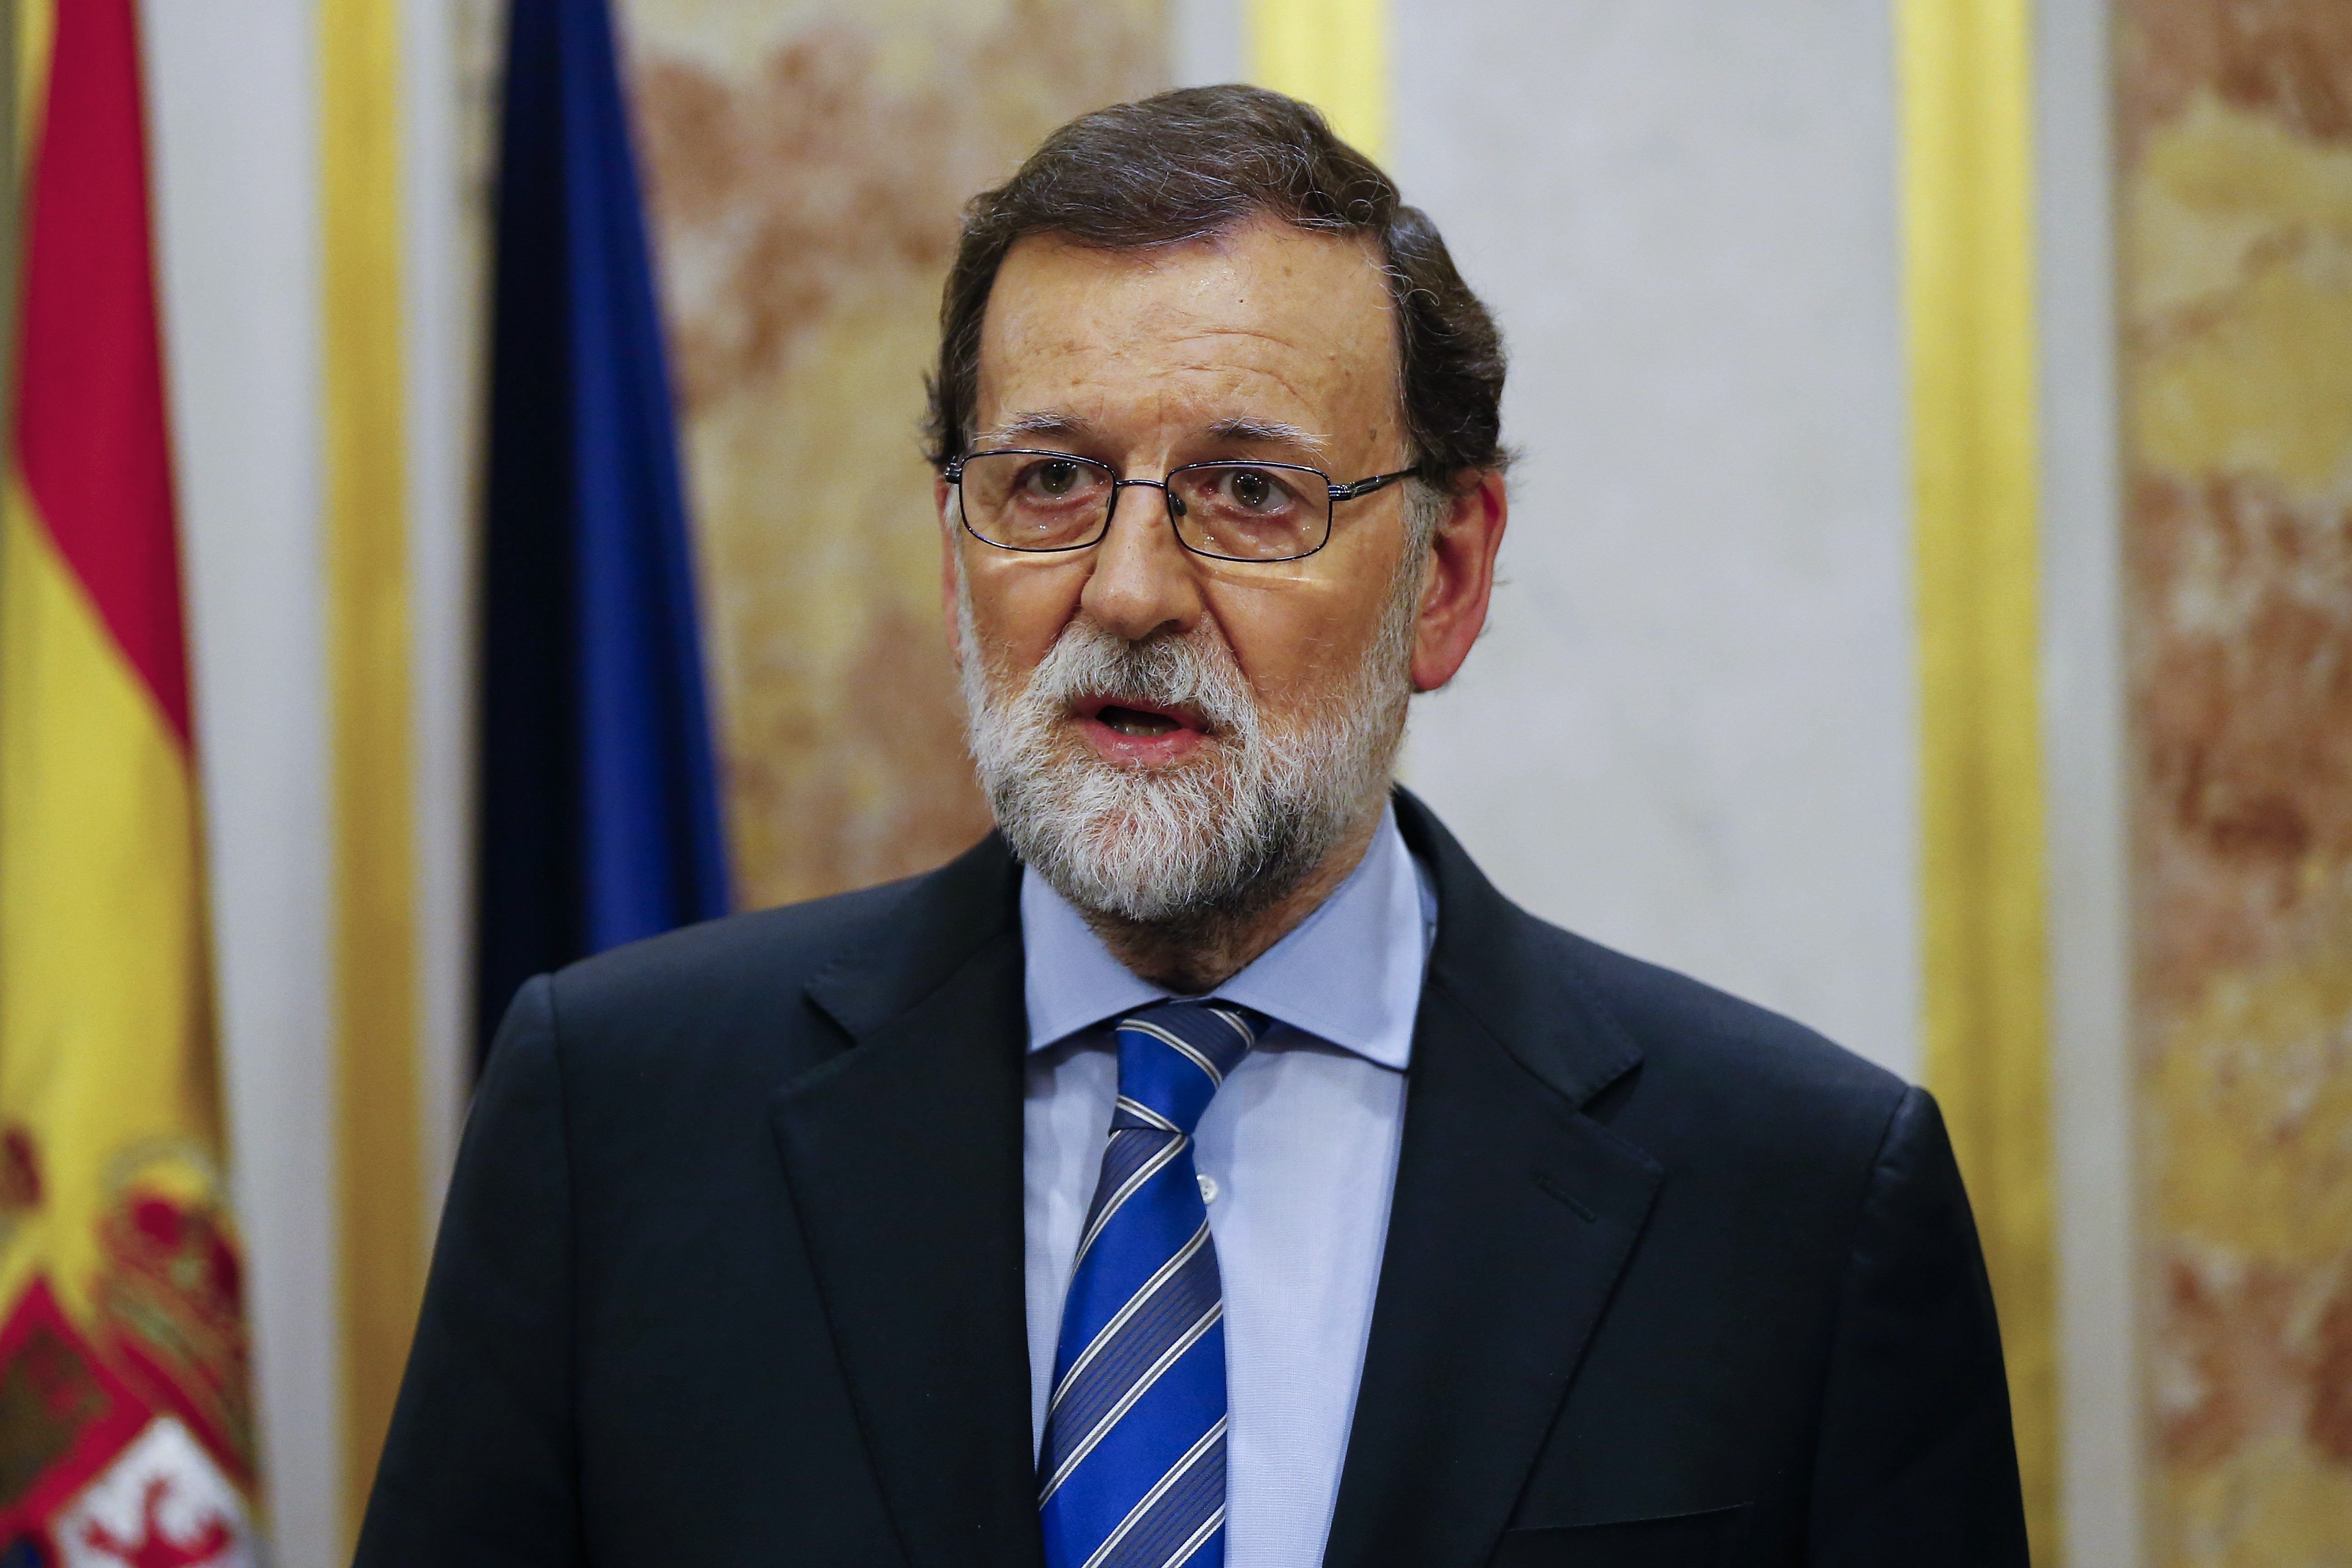 Rajoy respon a Torra que s'hi reunirà "quan formi Govern"